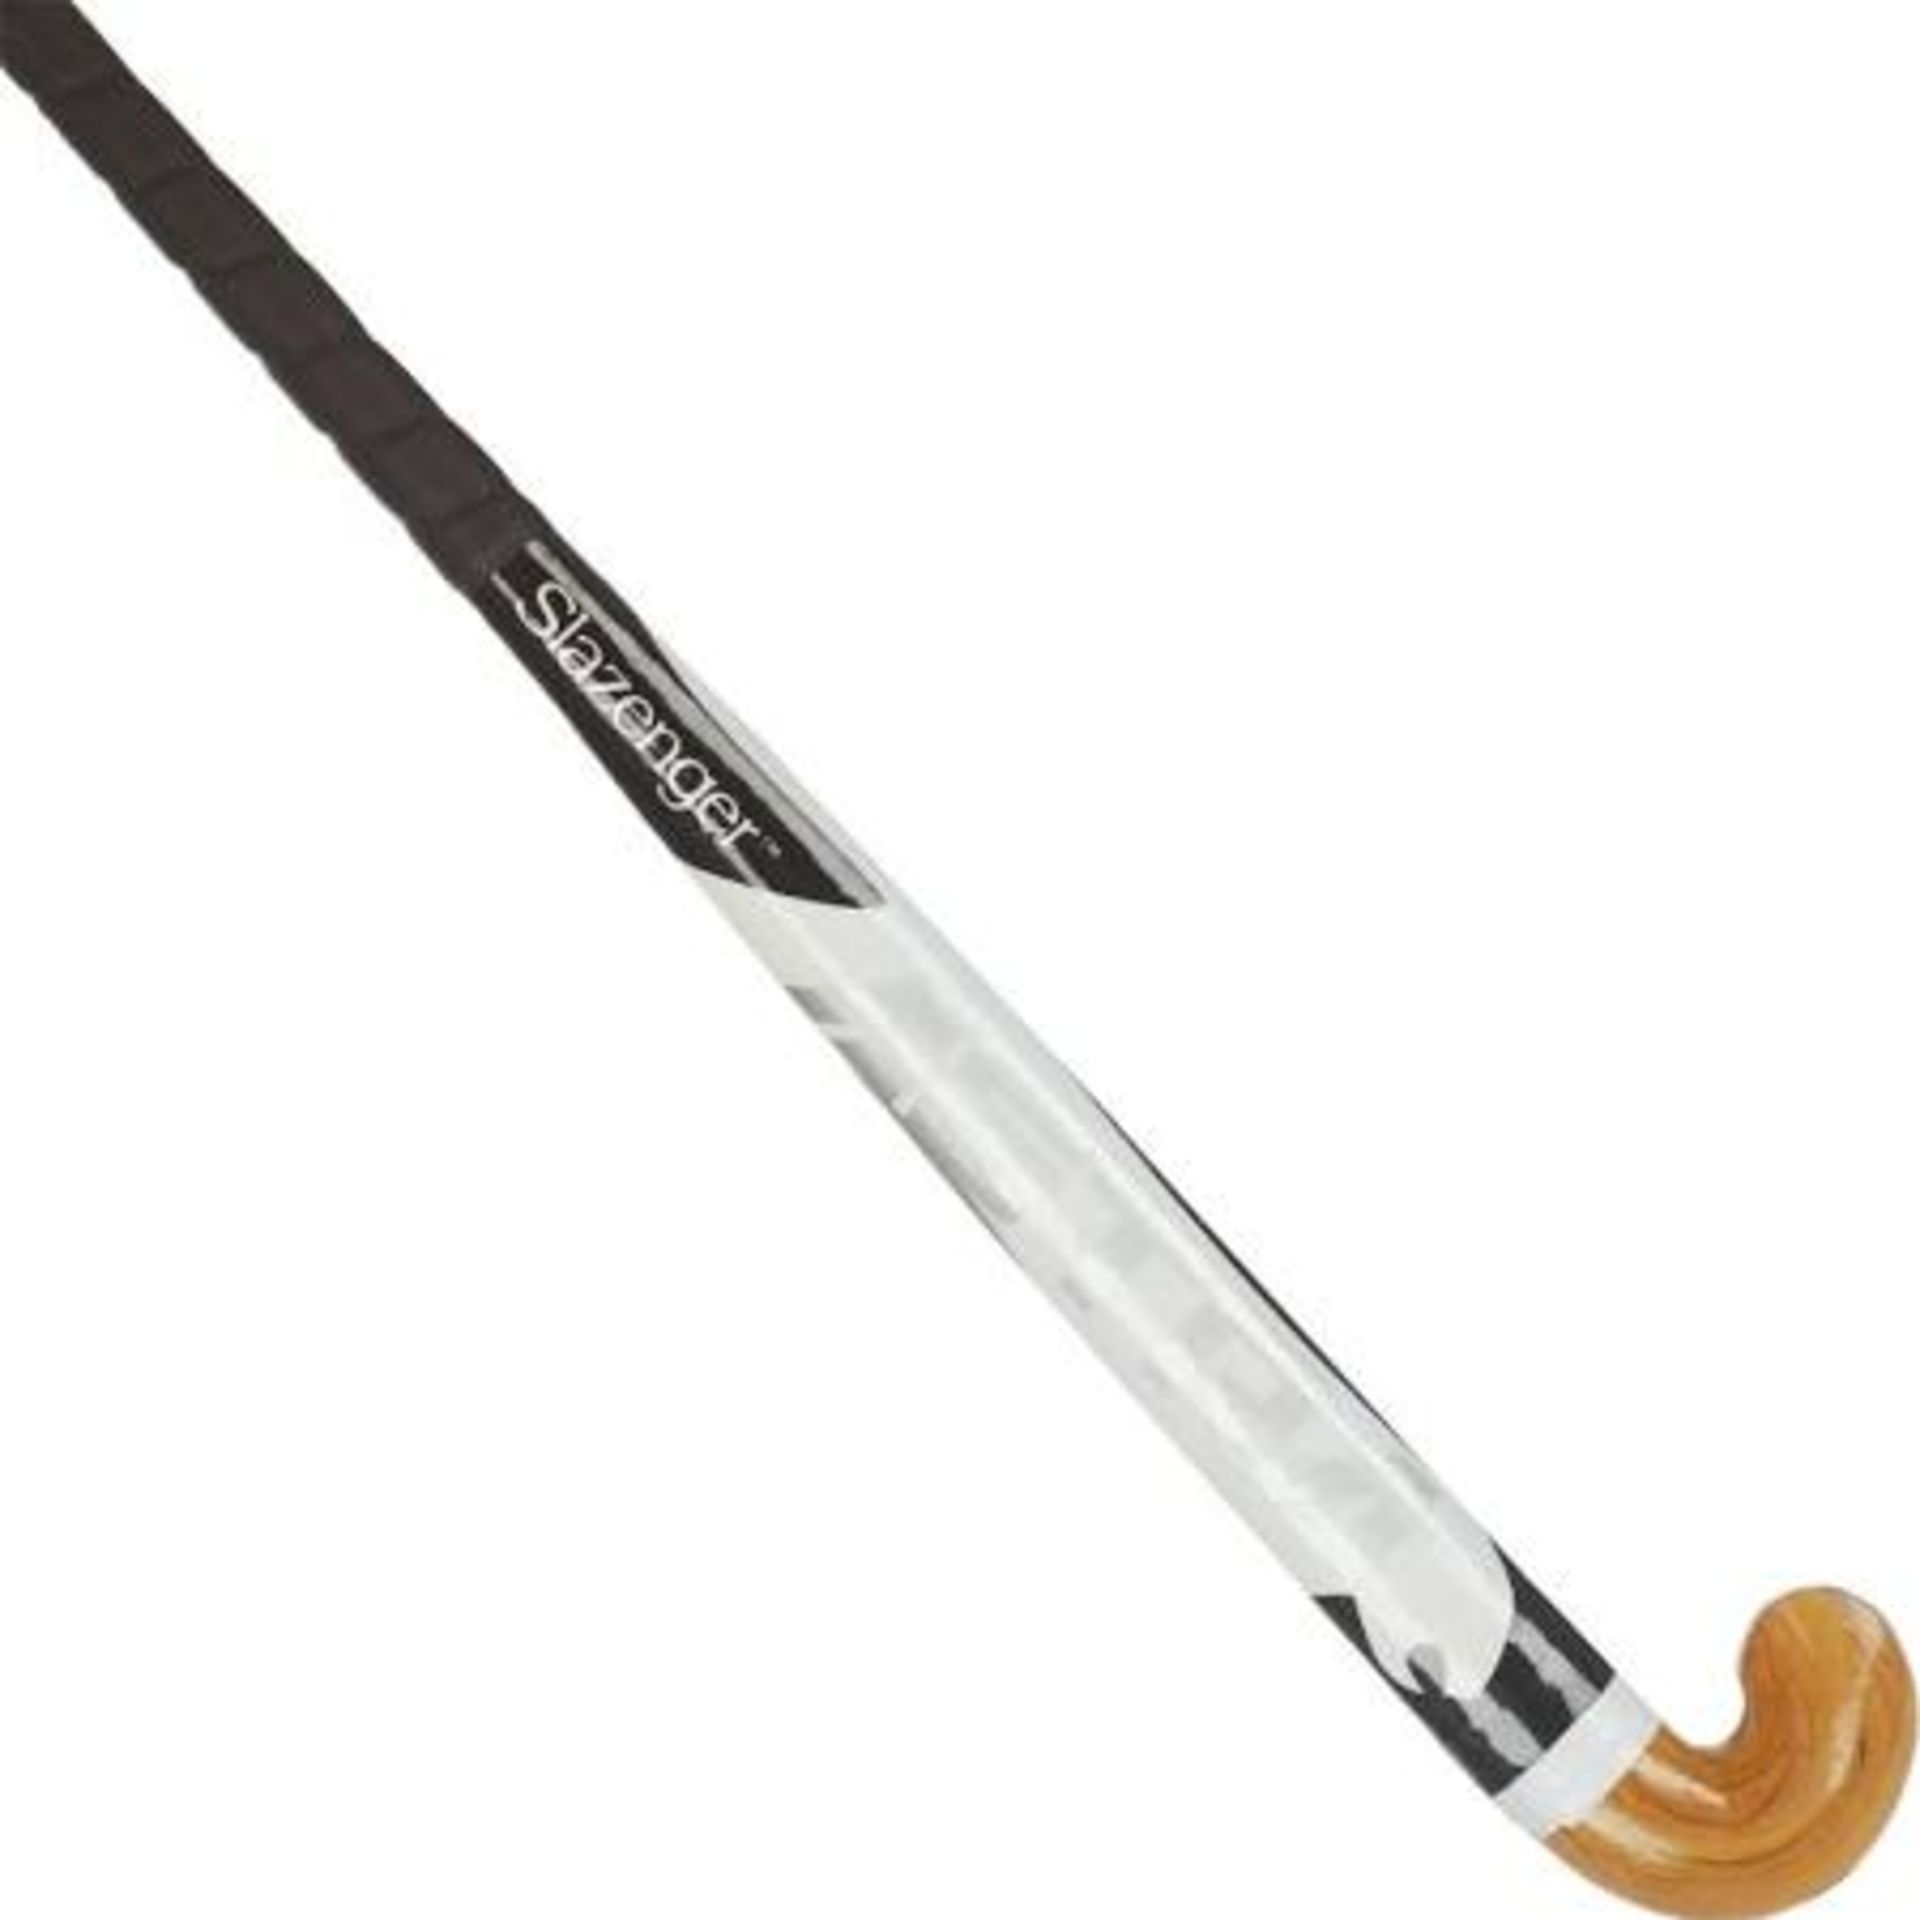 V Brand New Thirty Six Inch Slazenger Astra Hockey Stick ISP £26.63 (Fishpond.com) X 2 YOUR BID